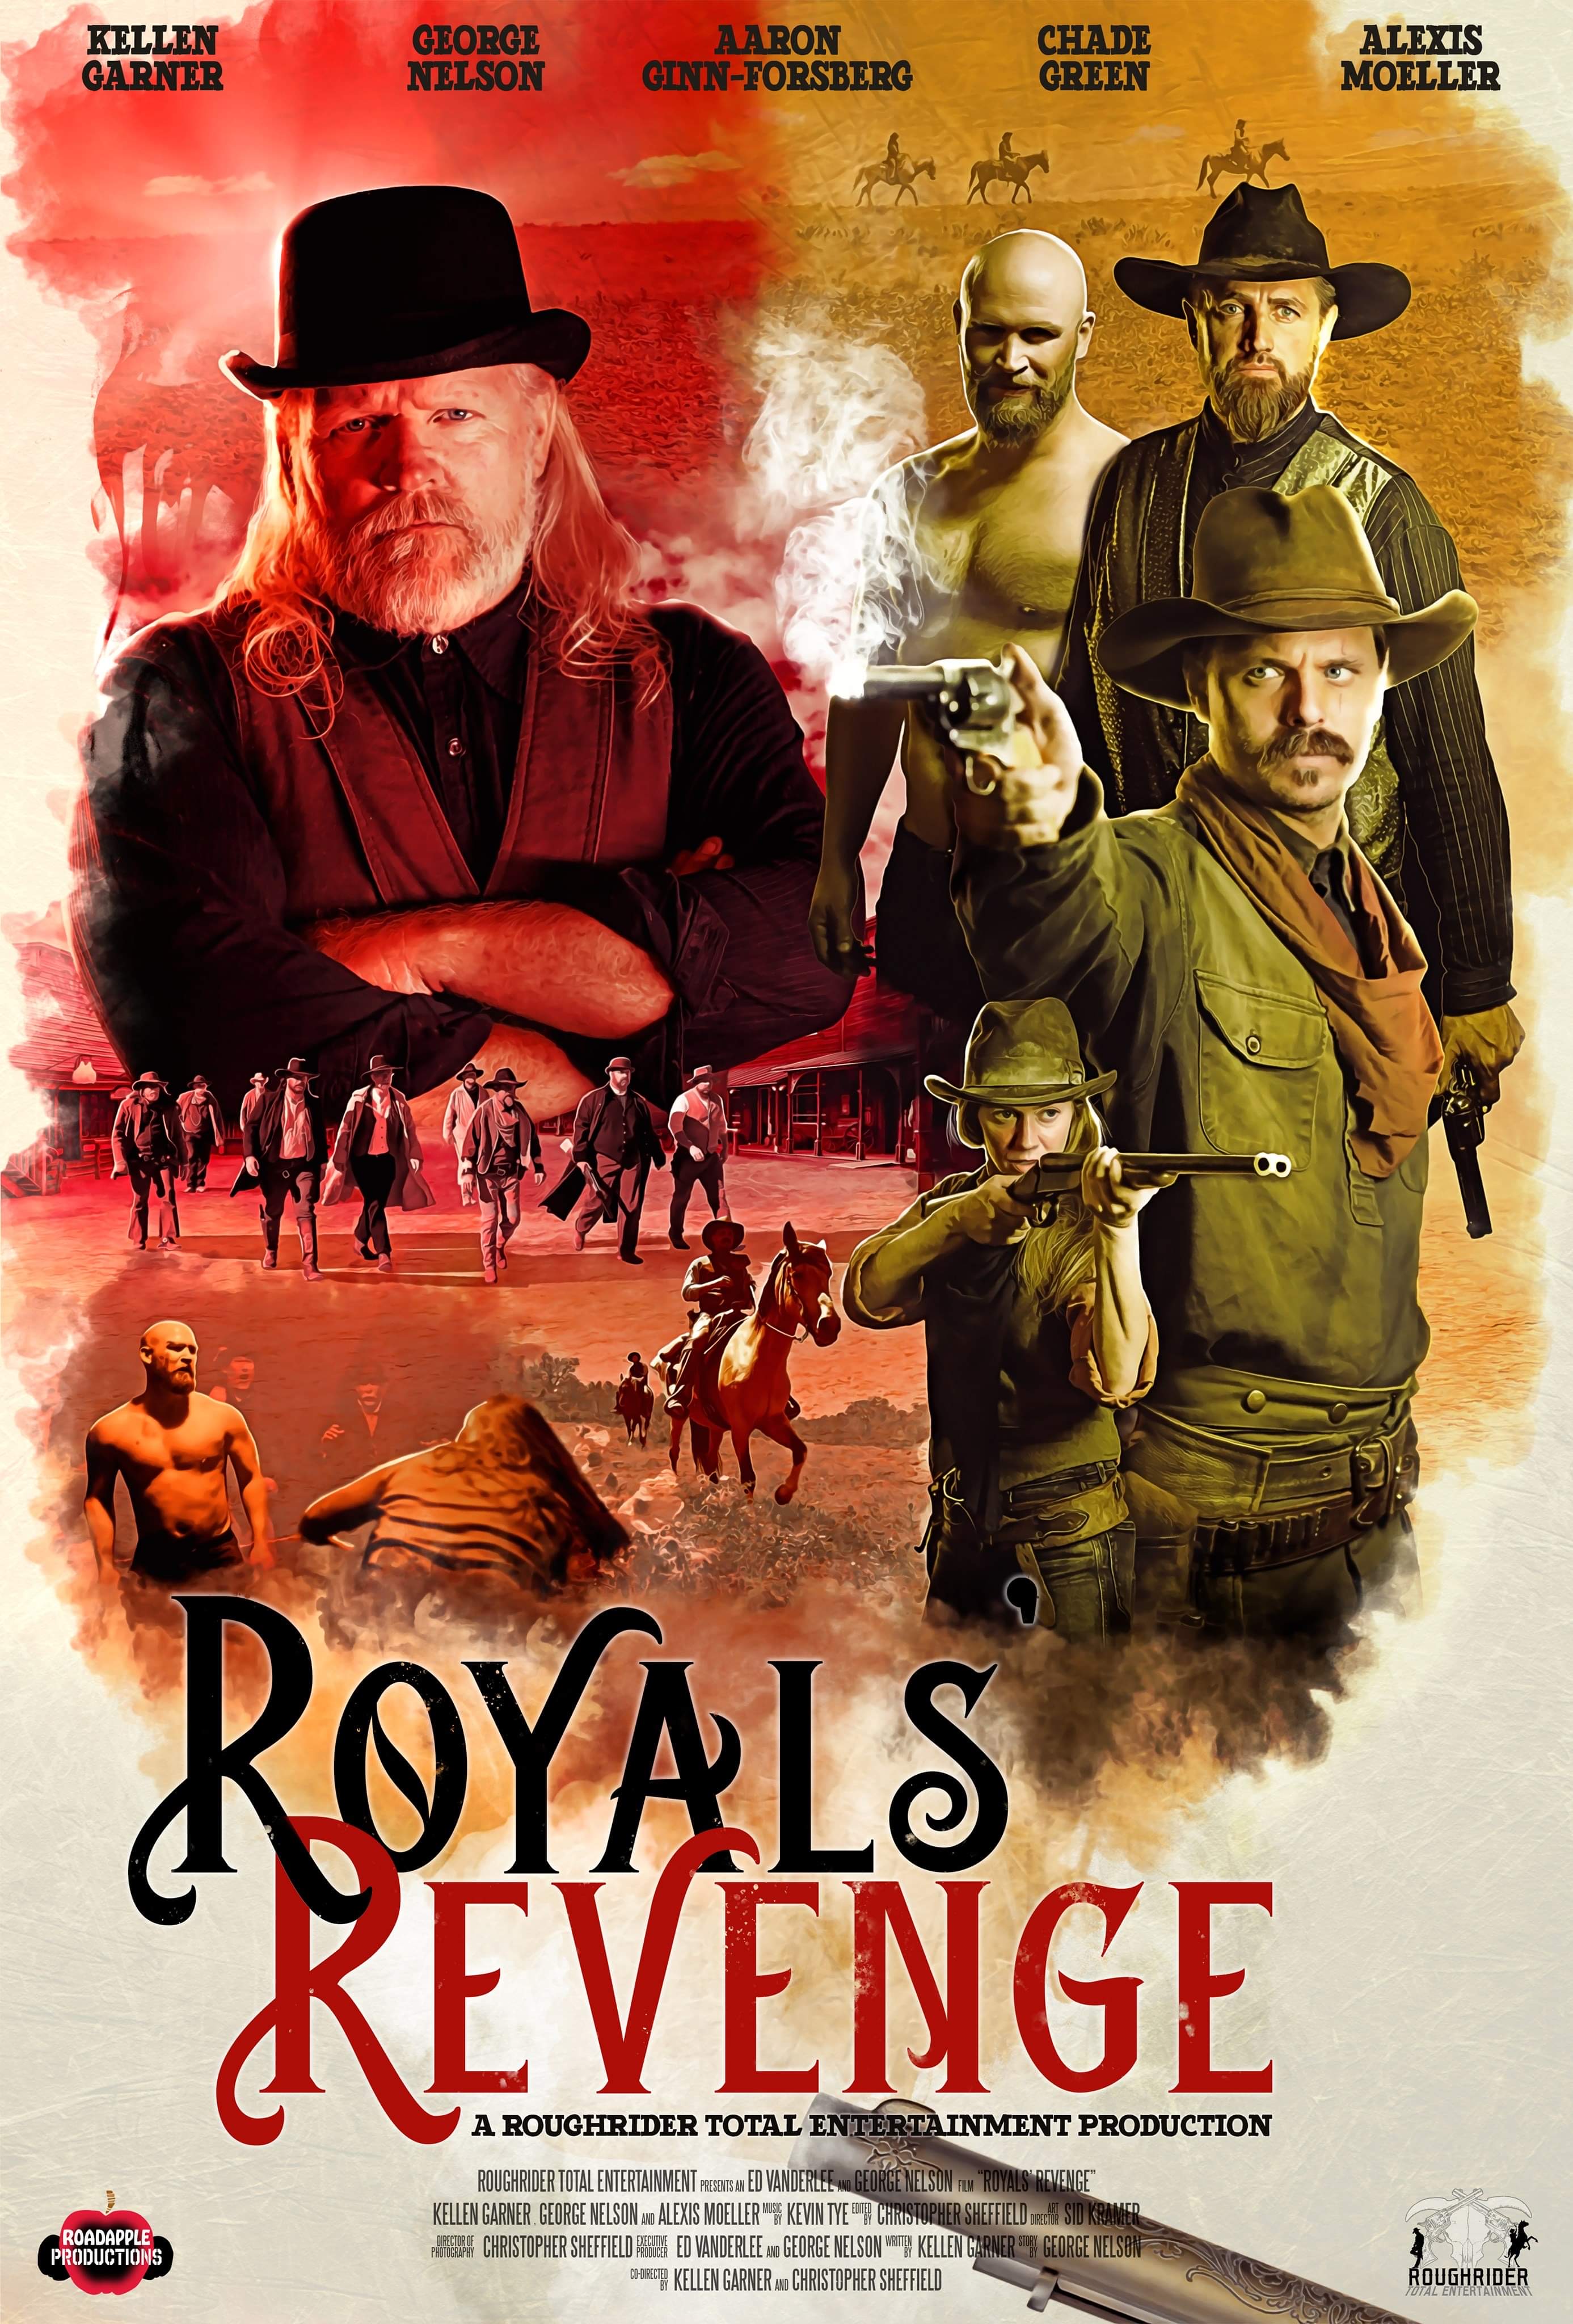 Royals' Revenge (2020)